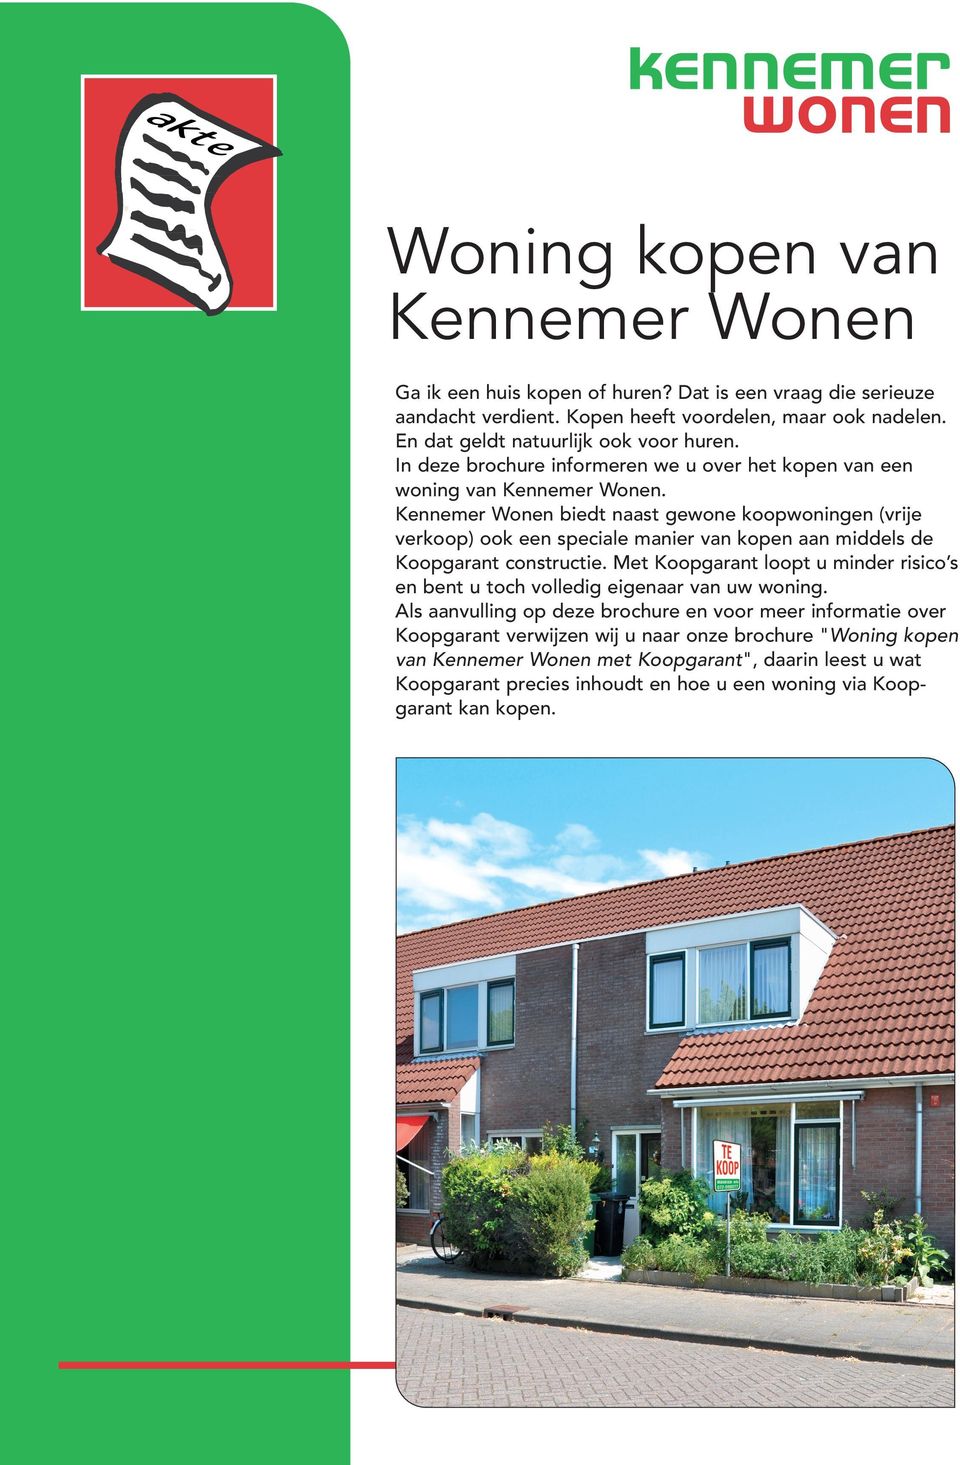 Kennemer Wonen biedt naast gewone koopwoningen (vrije verkoop) ook een speciale manier van kopen aan middels de Koopgarant constructie.